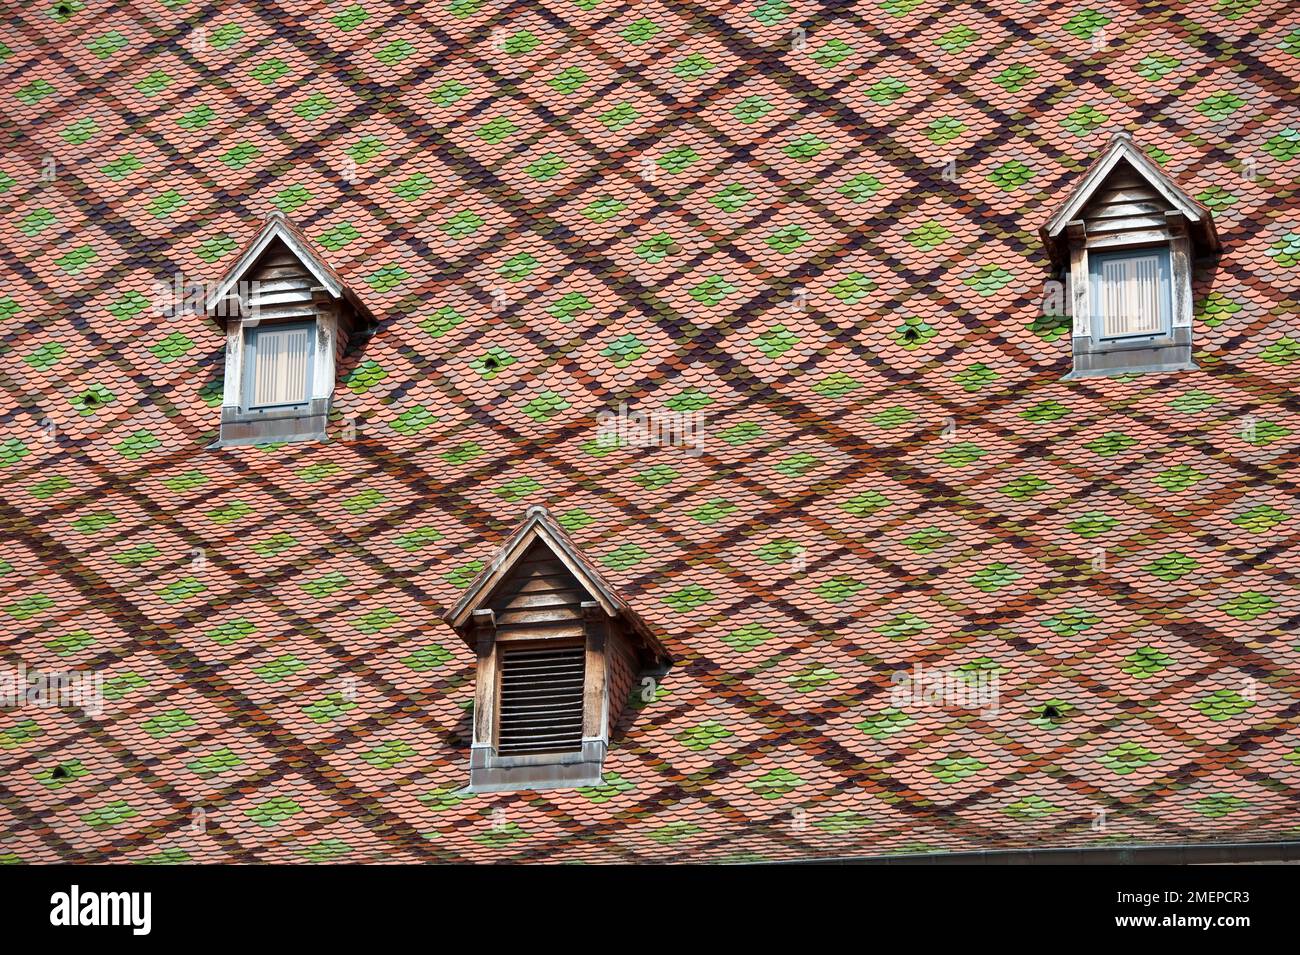 France, Franche-Comte, Besancon, Palais Granvelle, toit bourguignon roof and dormer windows, close-up Stock Photo